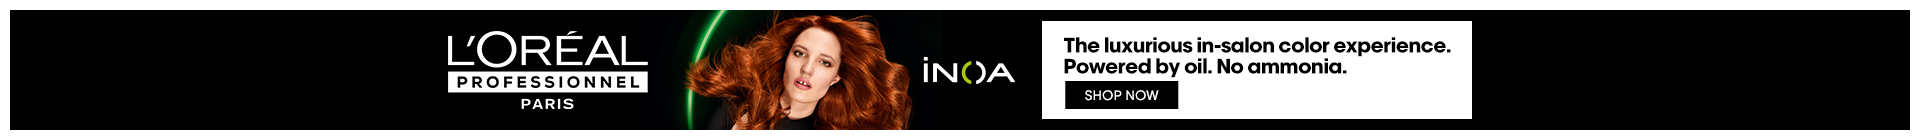 inoa_collection_banner | L'Oréal Partner Shop